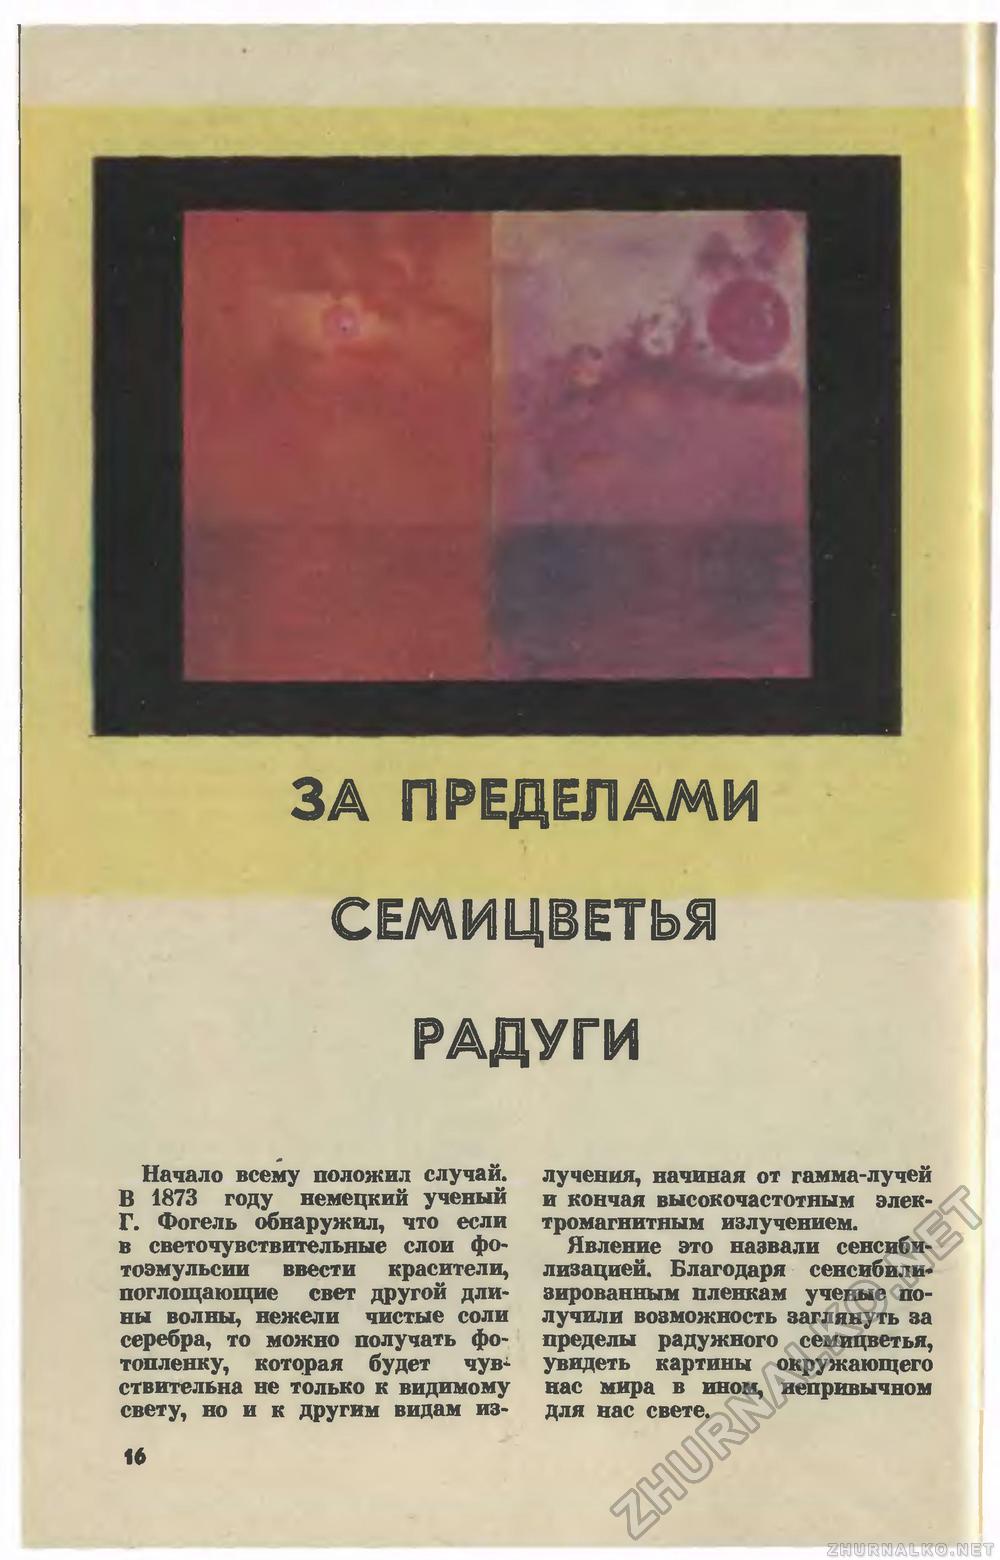   1979-07,  18